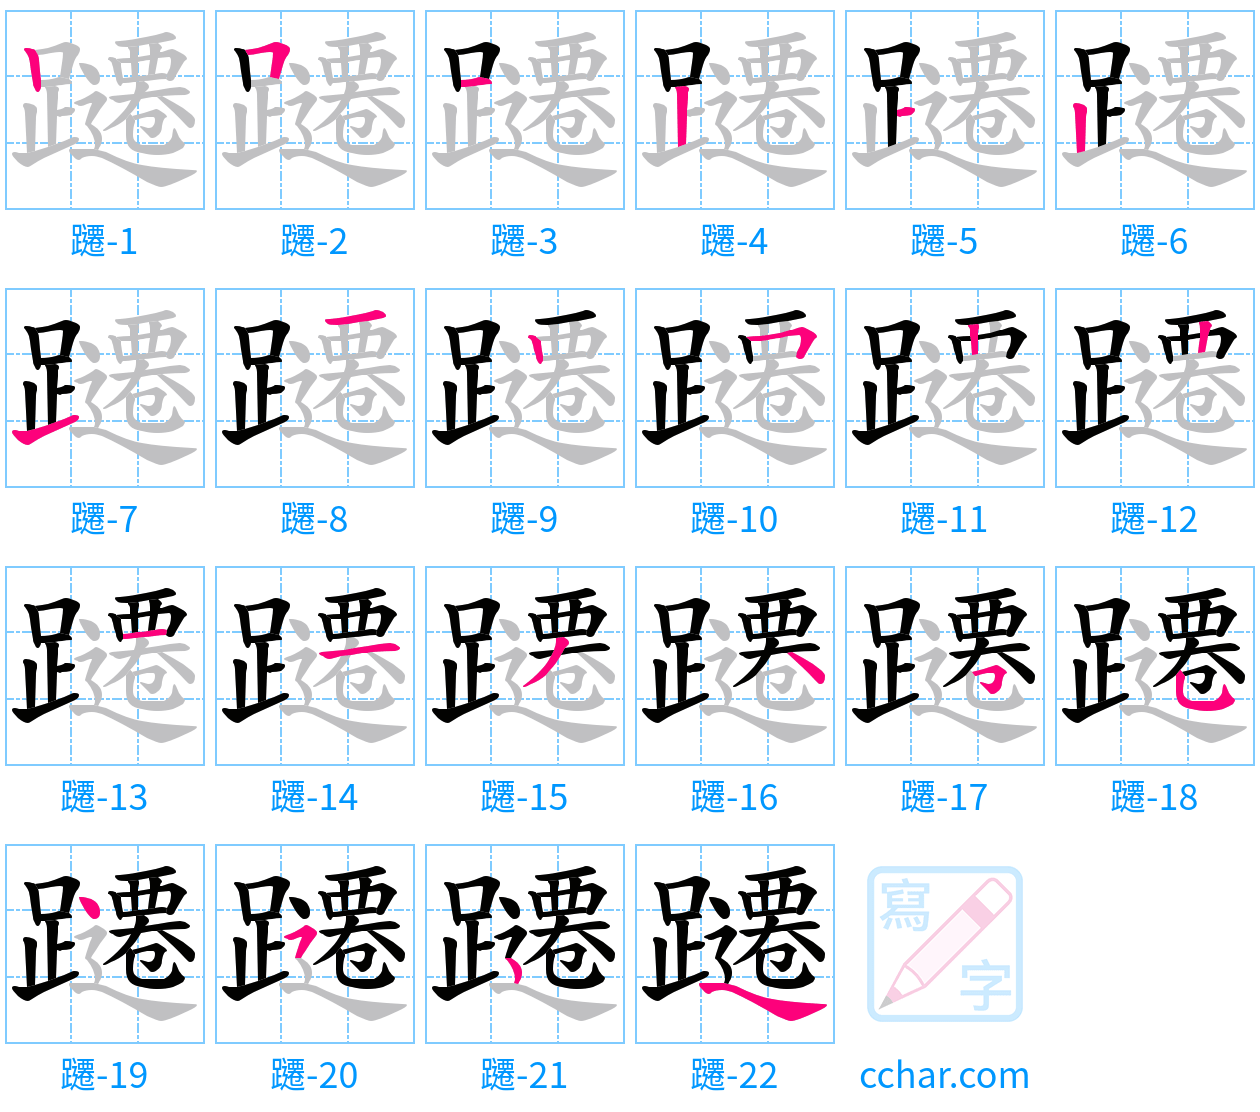 躚 stroke order step-by-step diagram